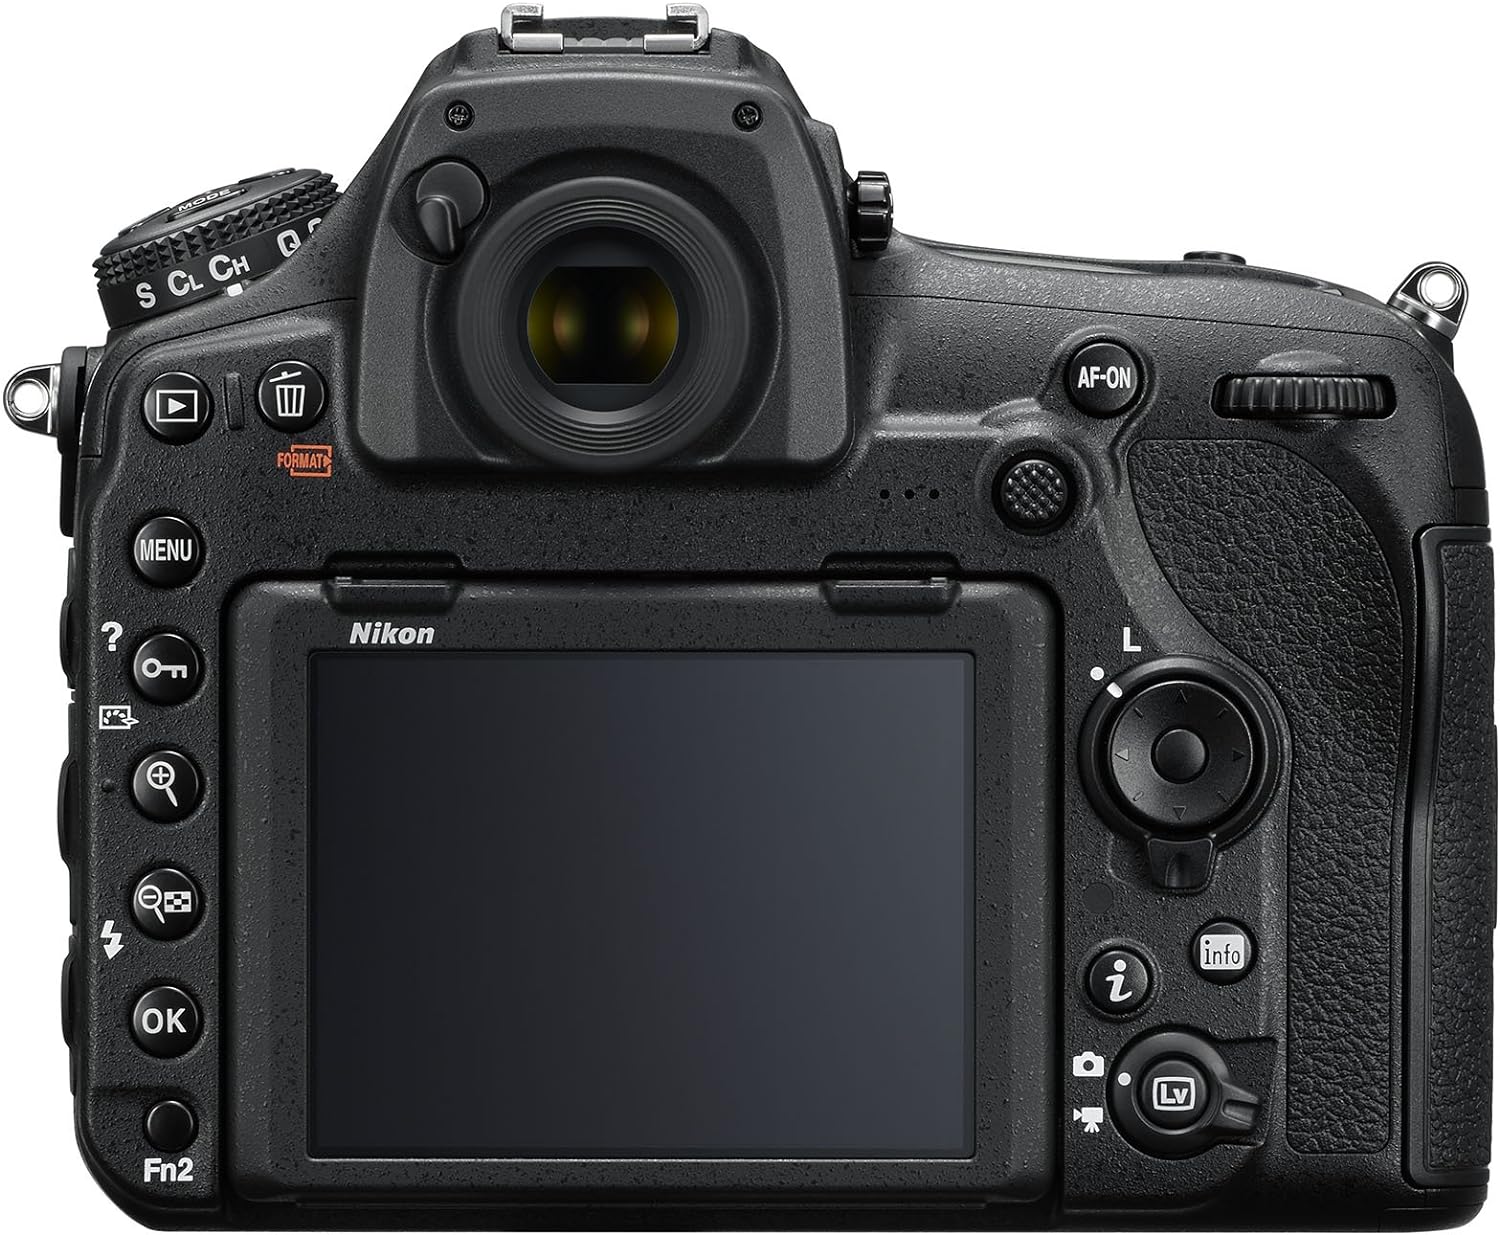 Nikon D850 FX-format Digital SLR Camera Body w/ AF-S NIKKOR 24-120MM F/4G ED VR Lens